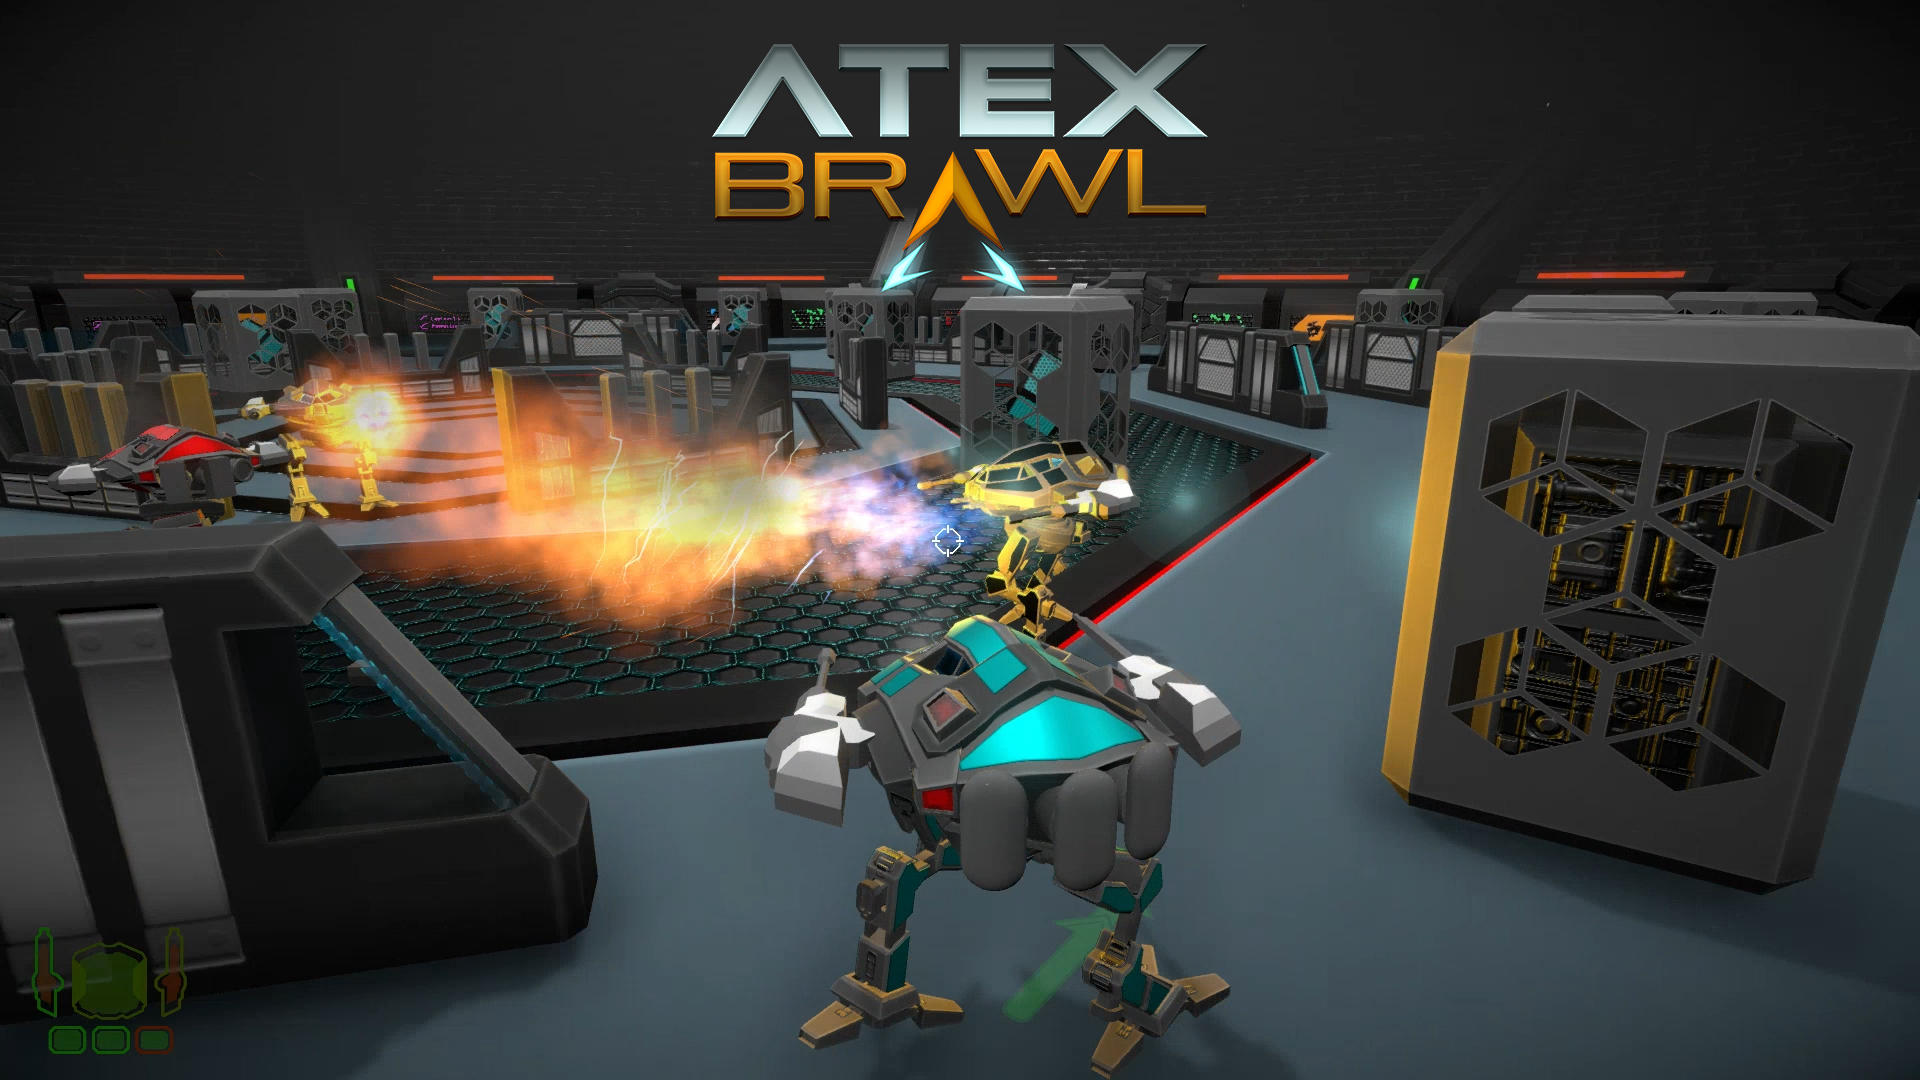 Atex Brawl